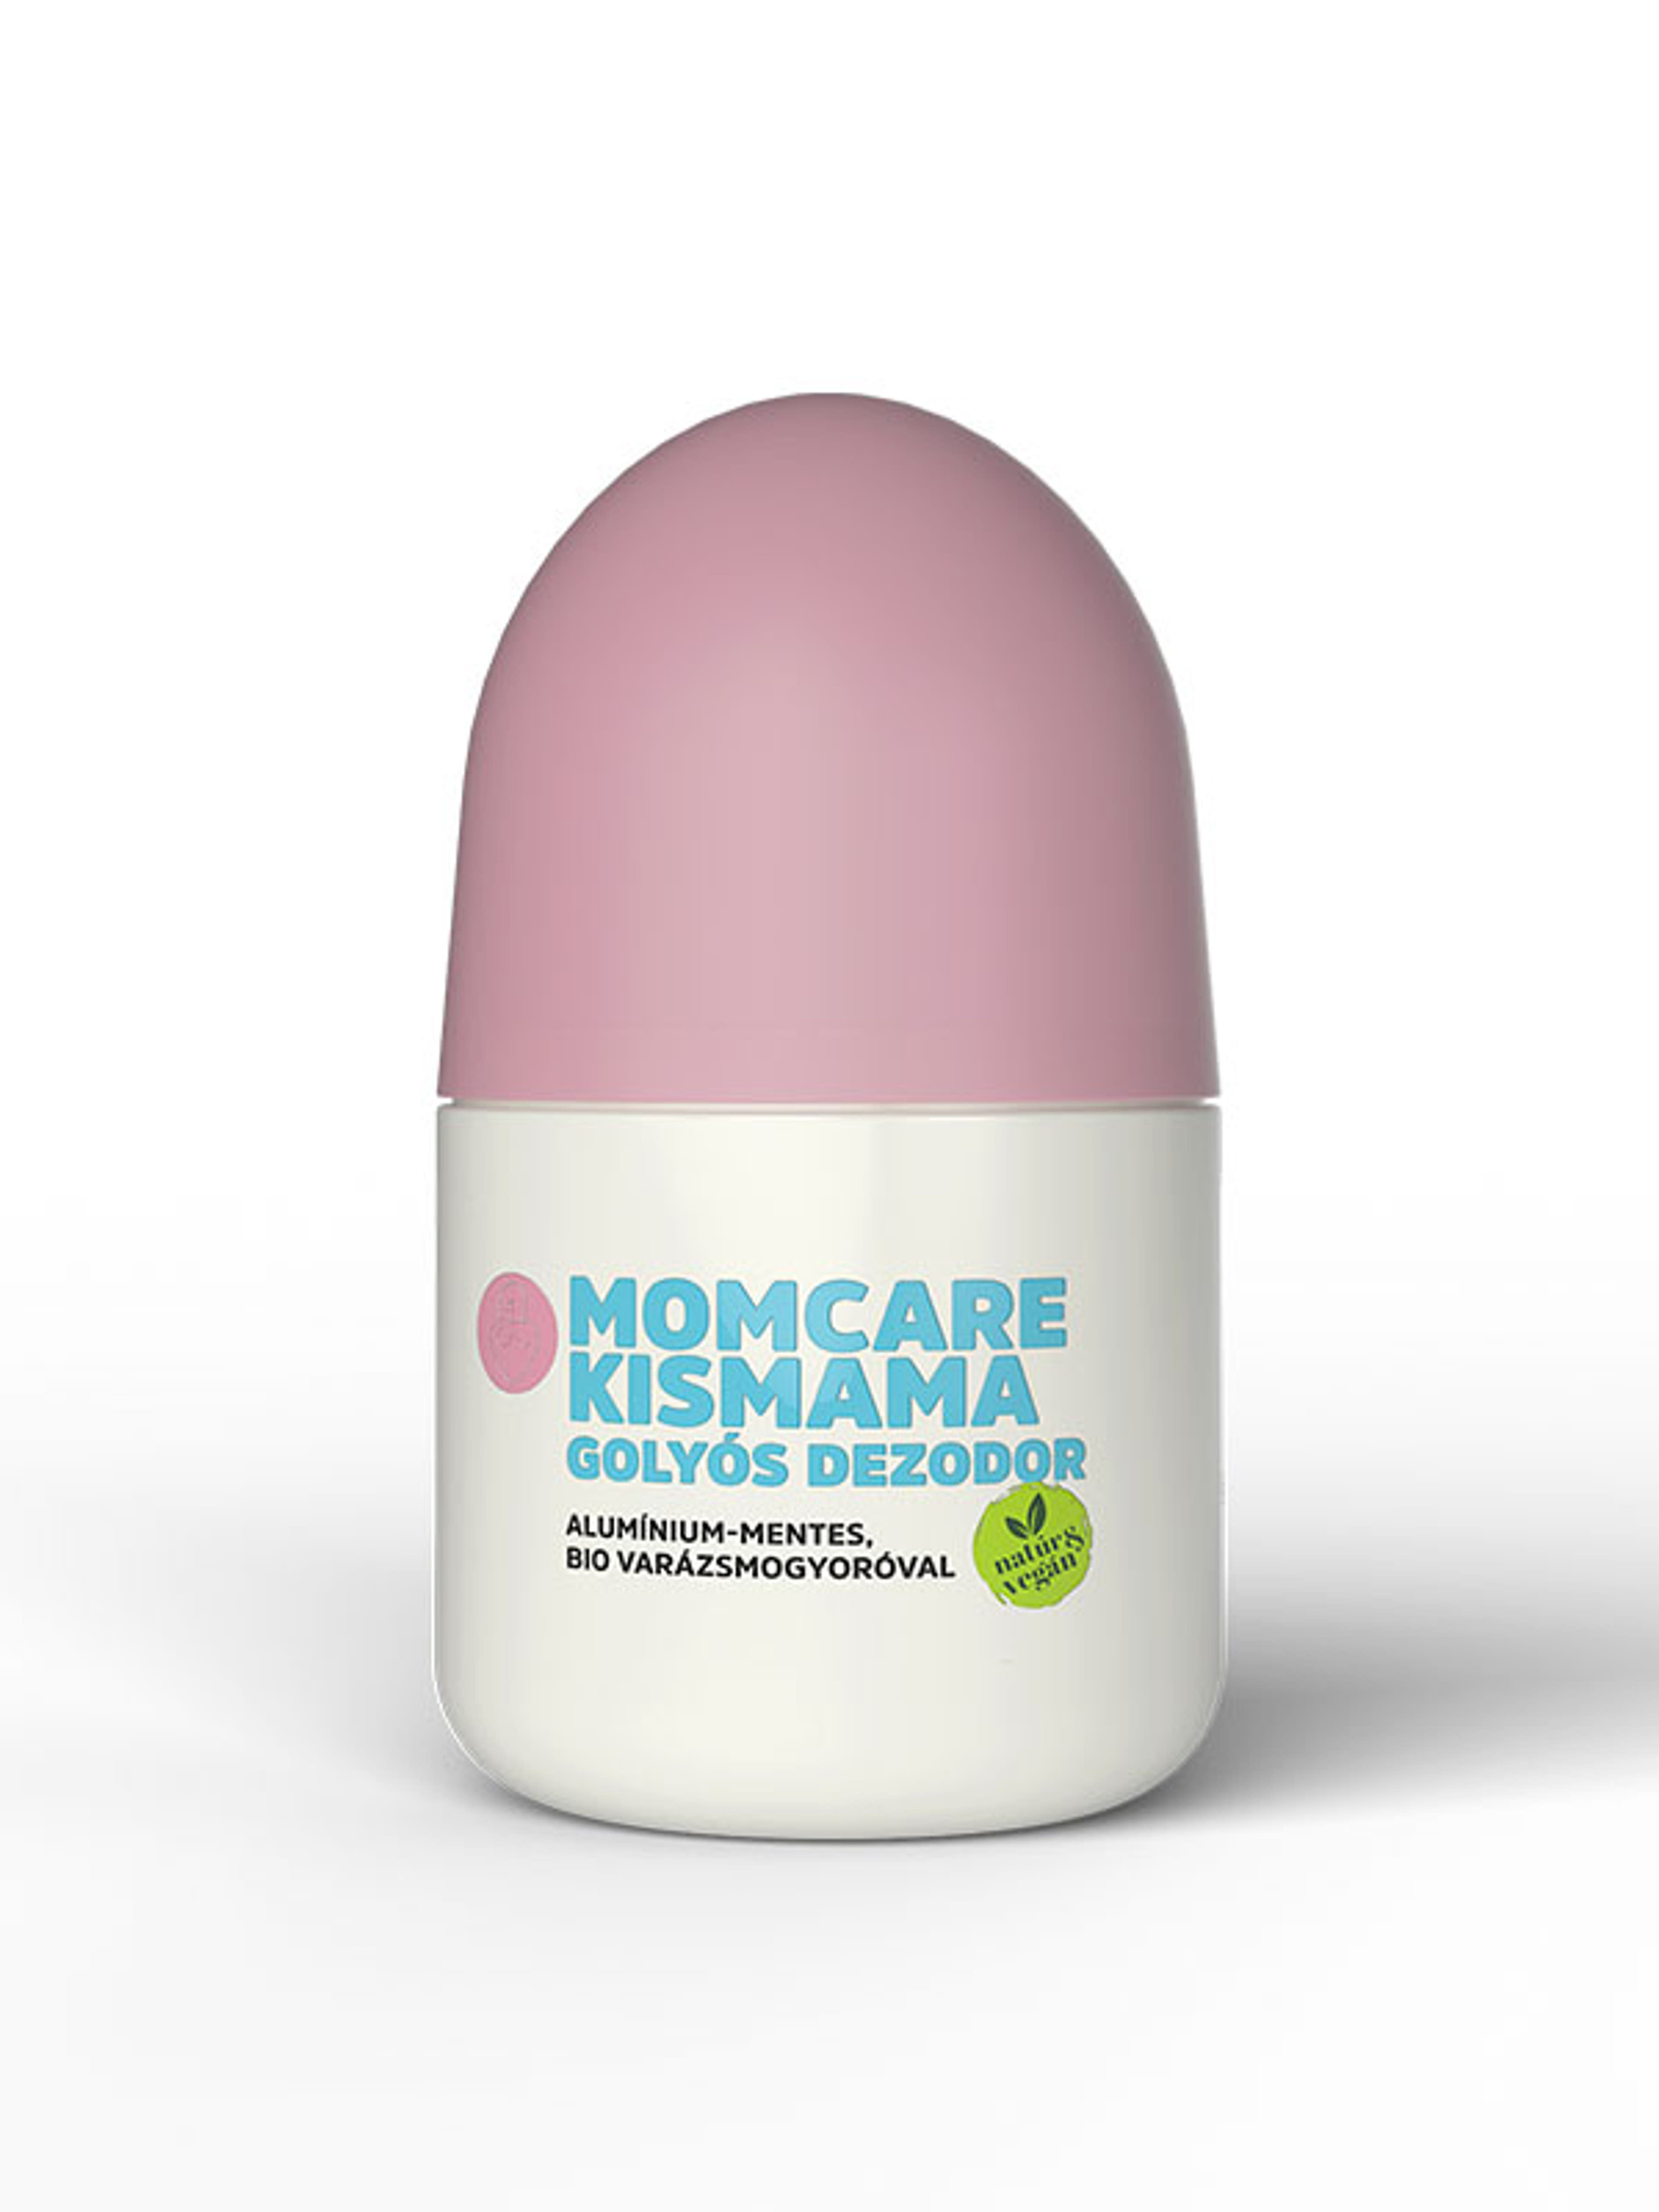 MomCare kismama dezodor - 60 ml-3